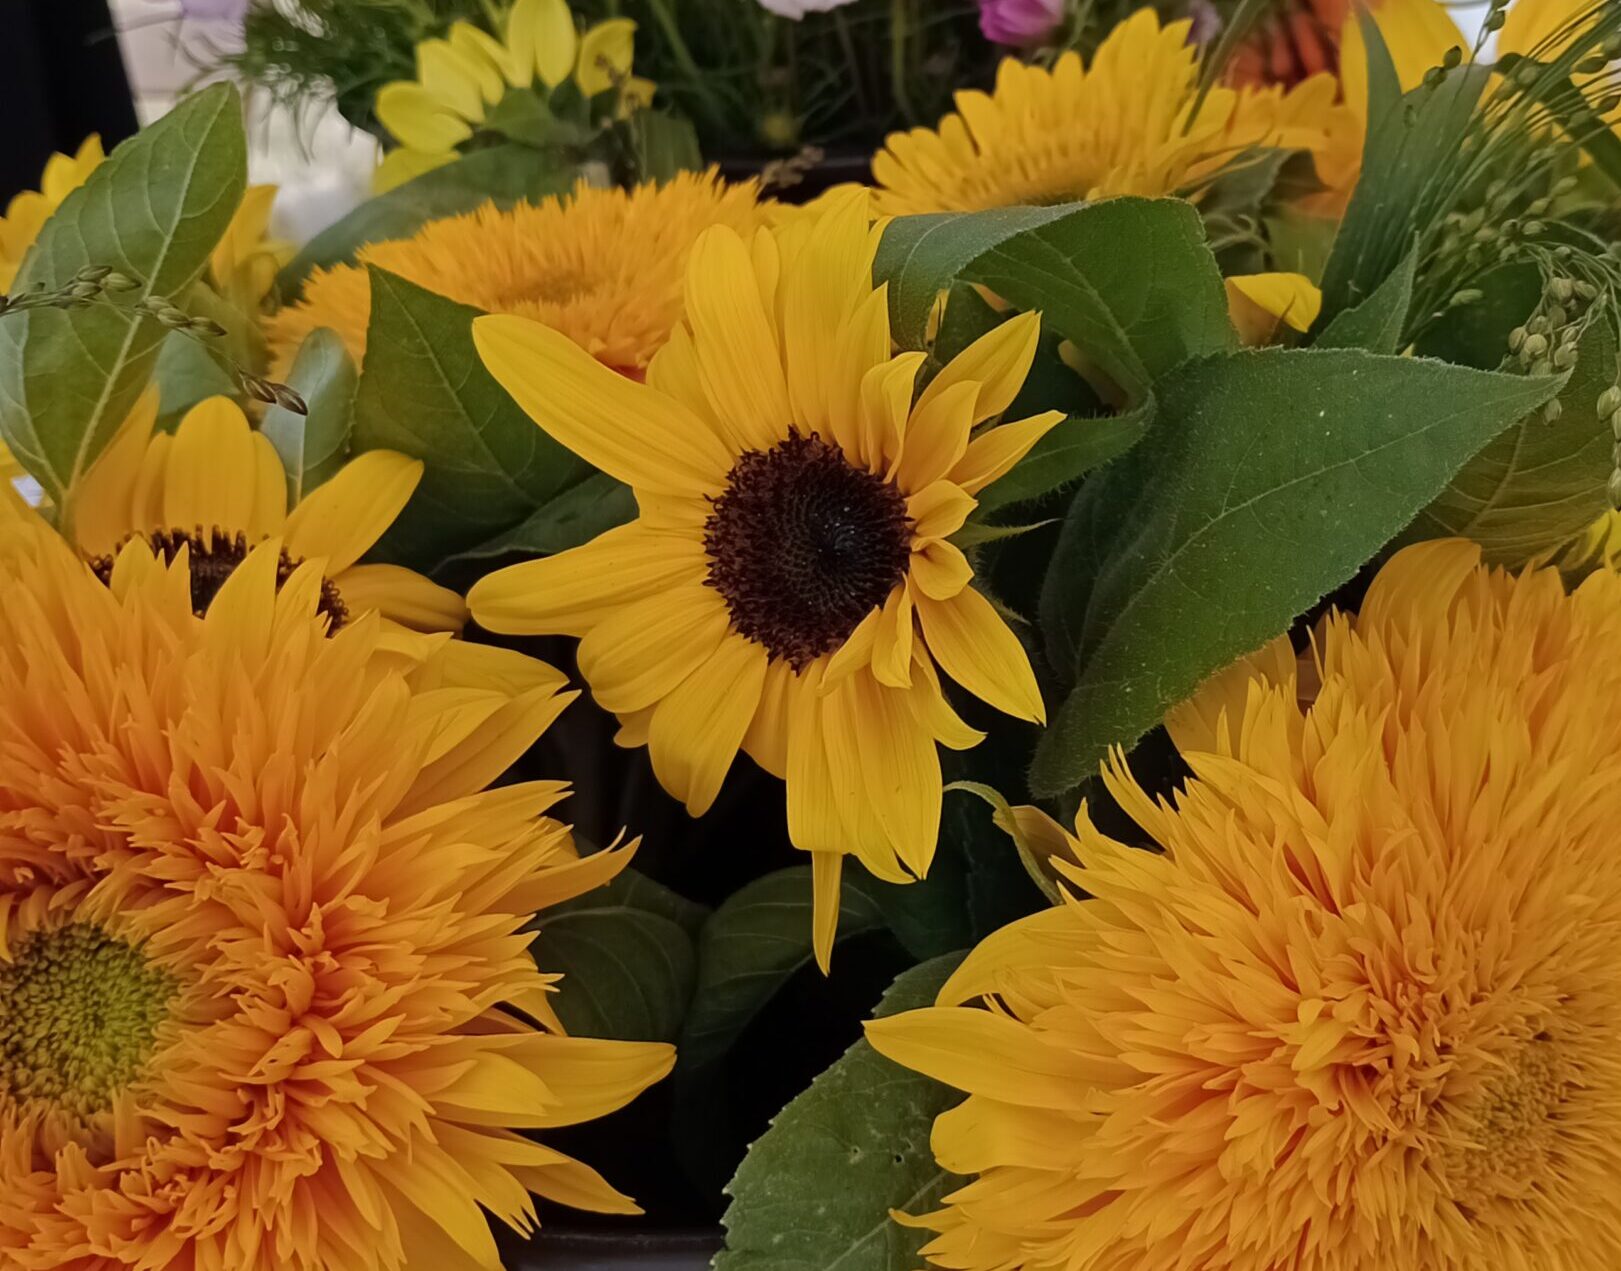 Flower & Foilage Farm: Sunflowers at Jordans Farm